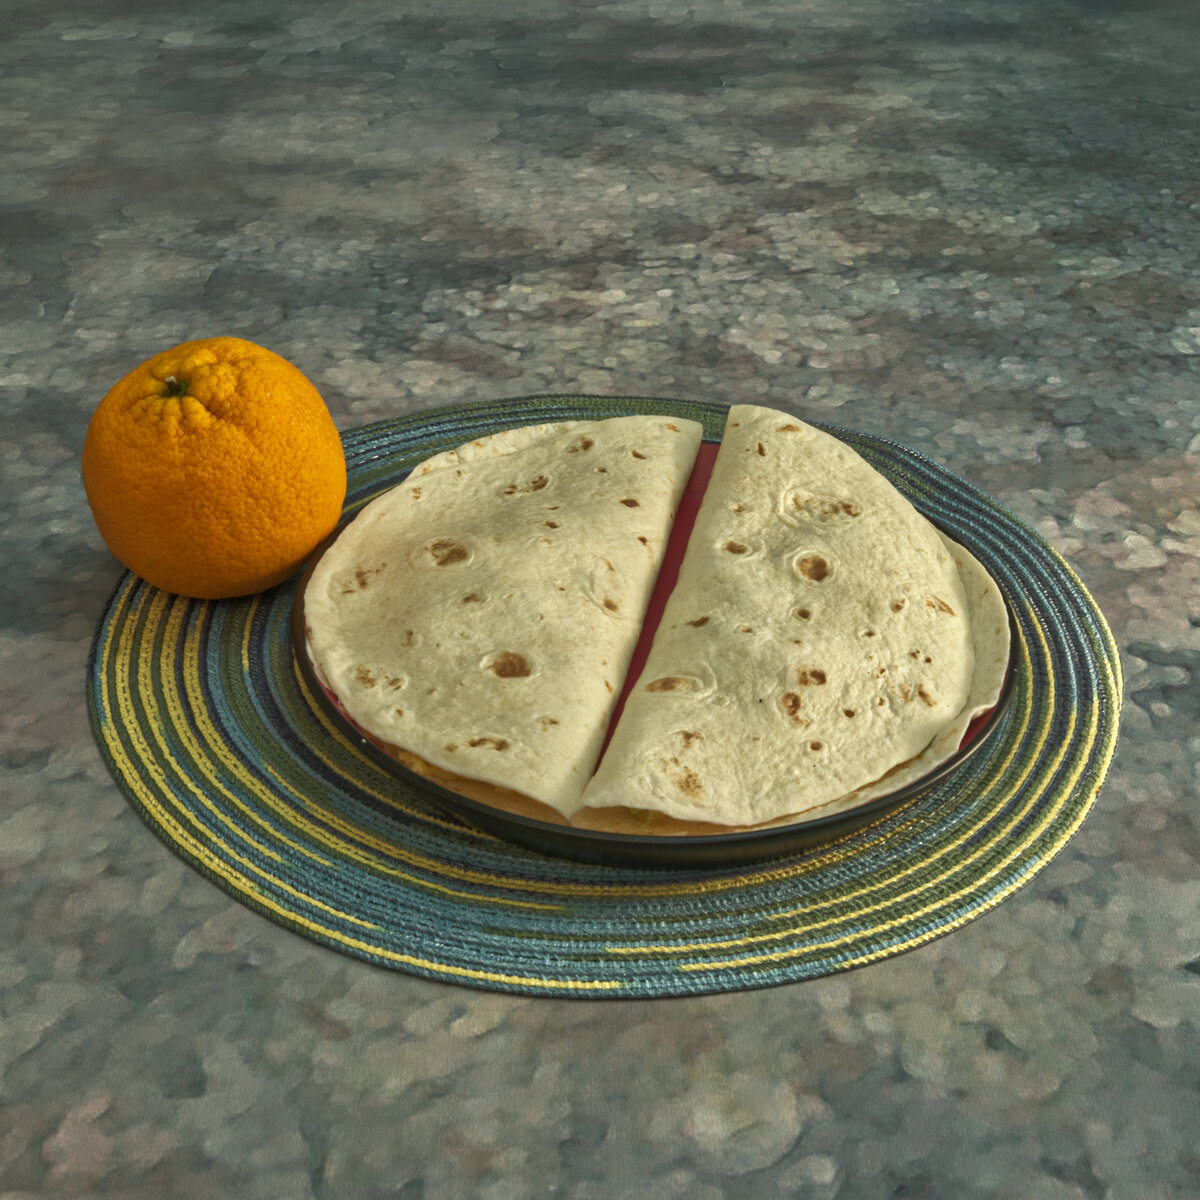 Breakfast Quesadillas with an Orange